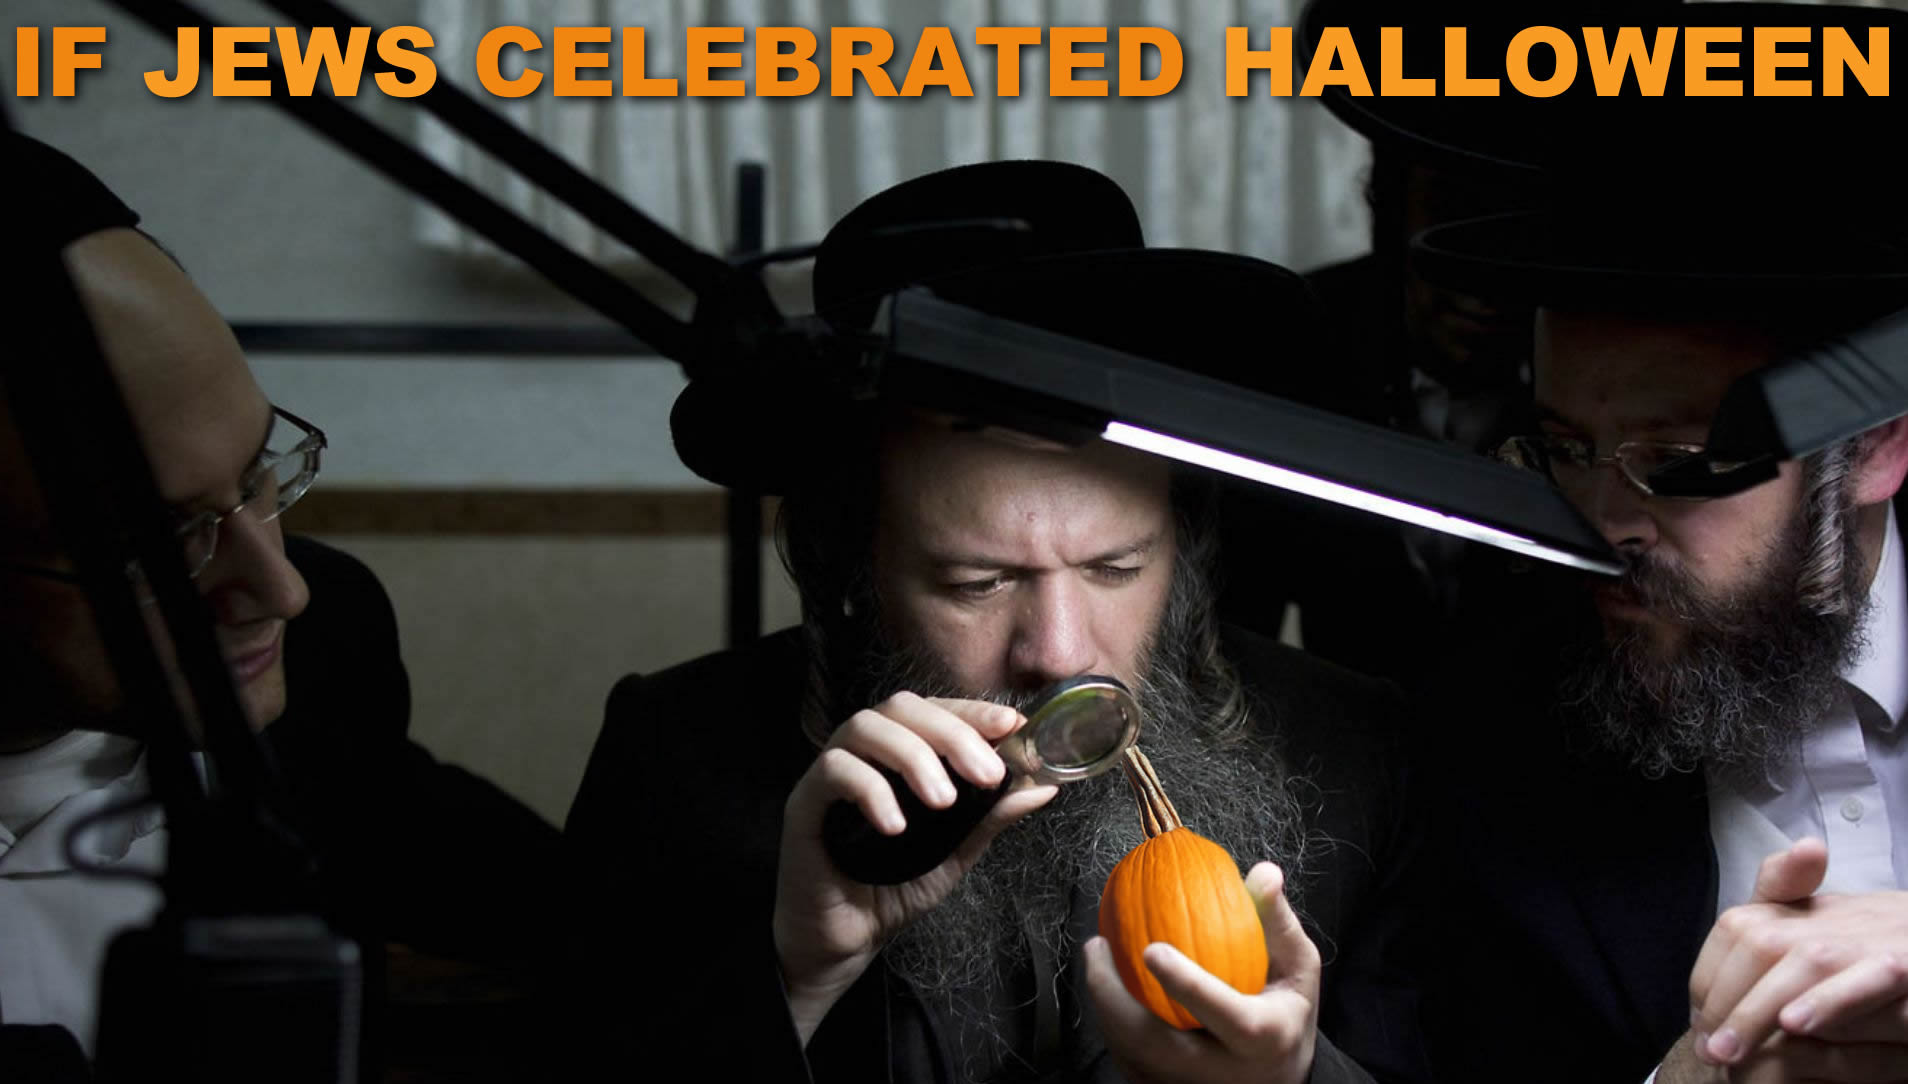 La celebración de Halloween y el pueblo judío